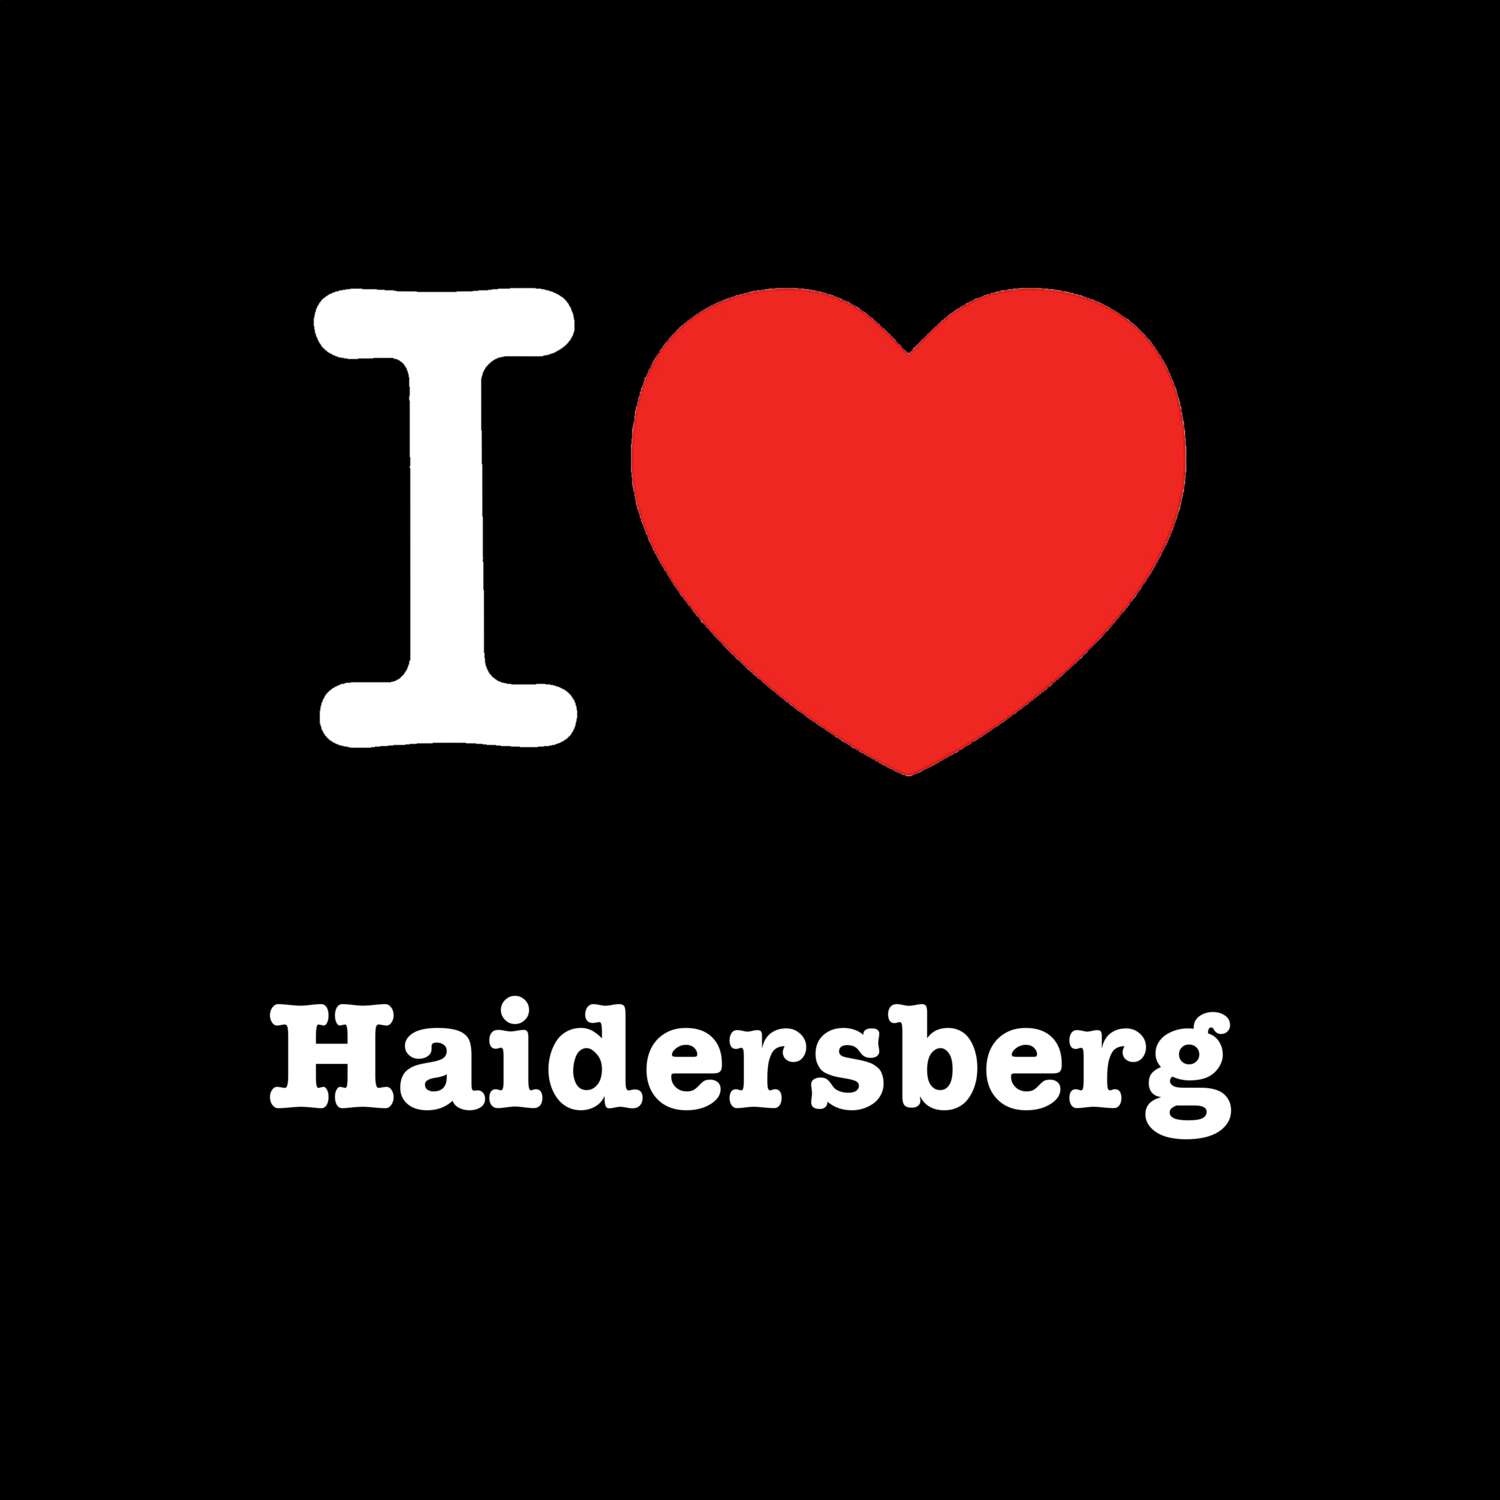 Haidersberg T-Shirt »I love«